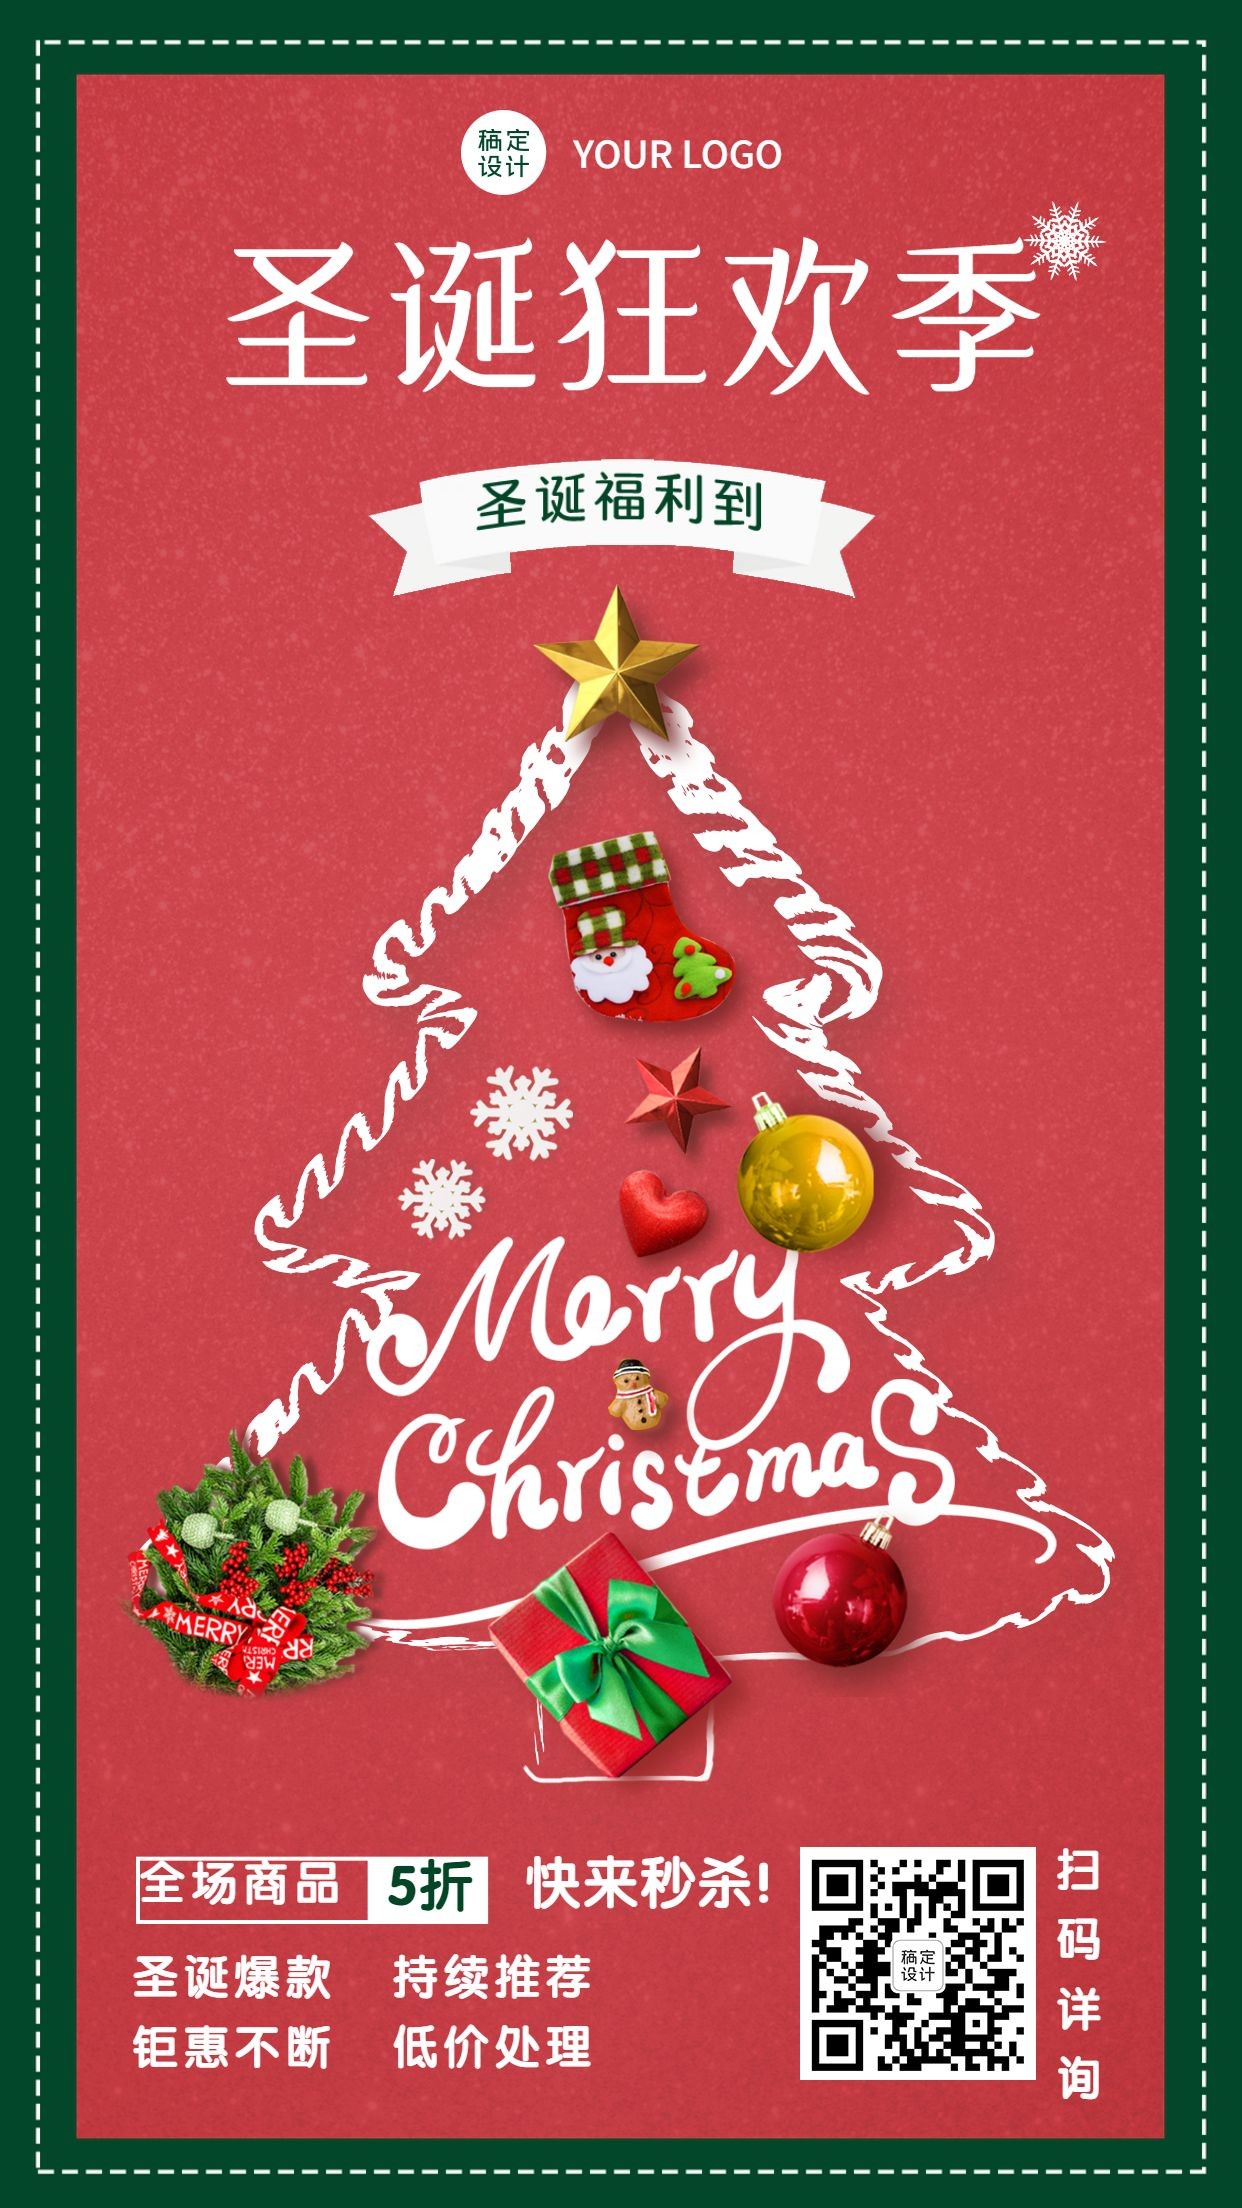 圣诞平安夜微信朋友圈活动营销手机海报预览效果